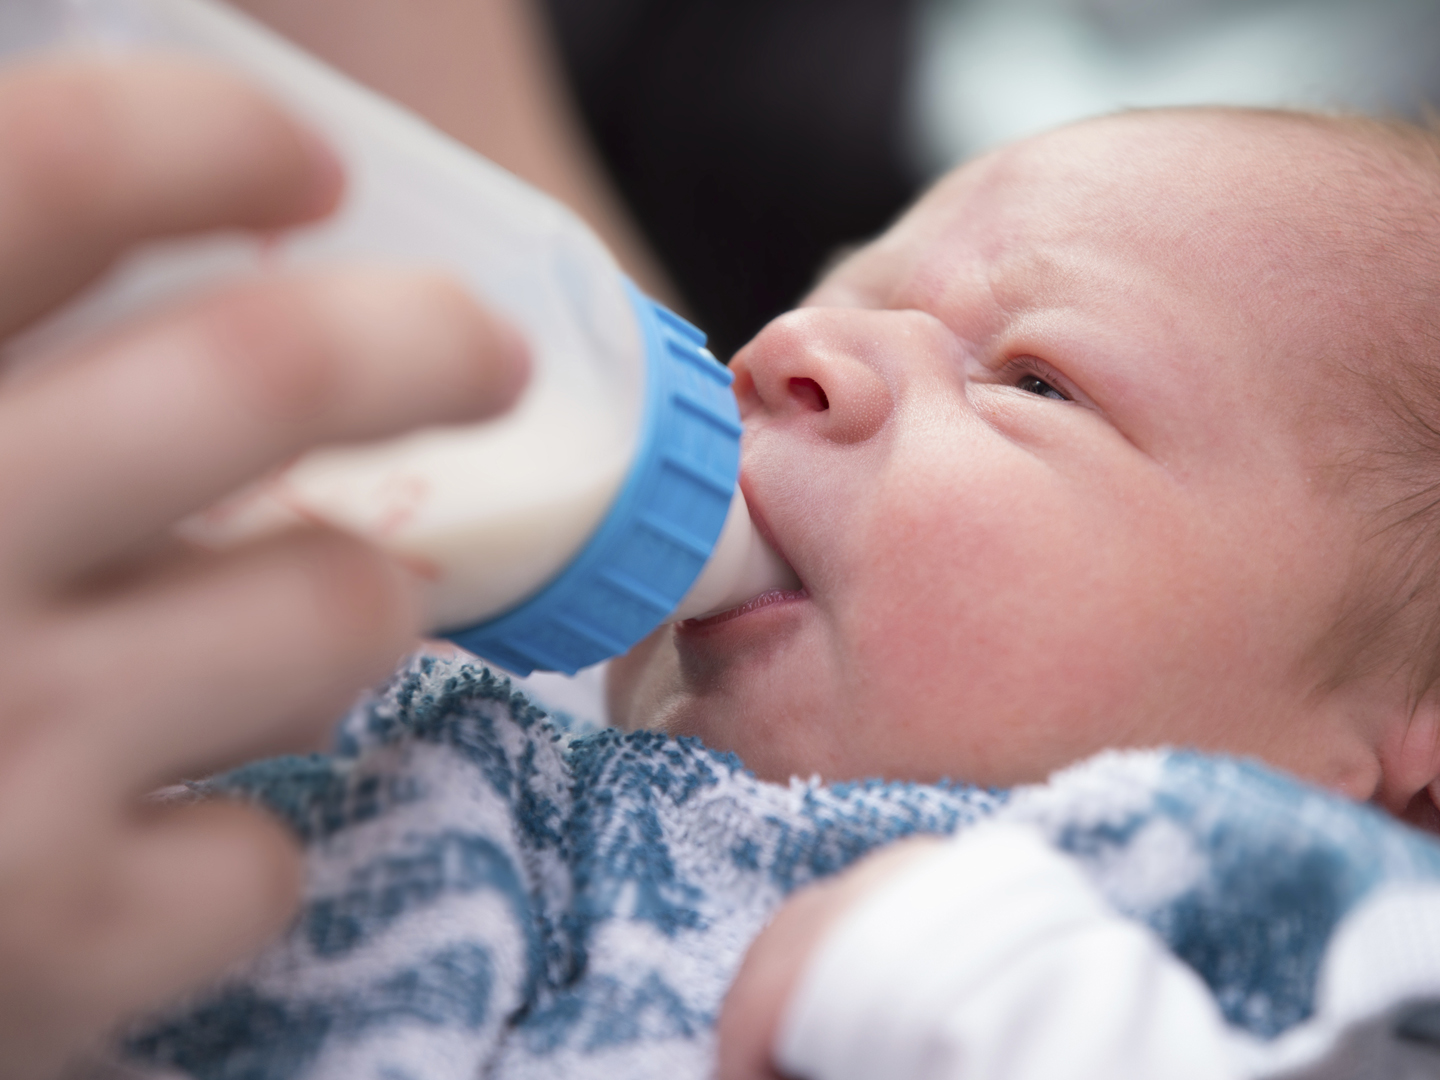 Newborn baby drinking bottle milk at night